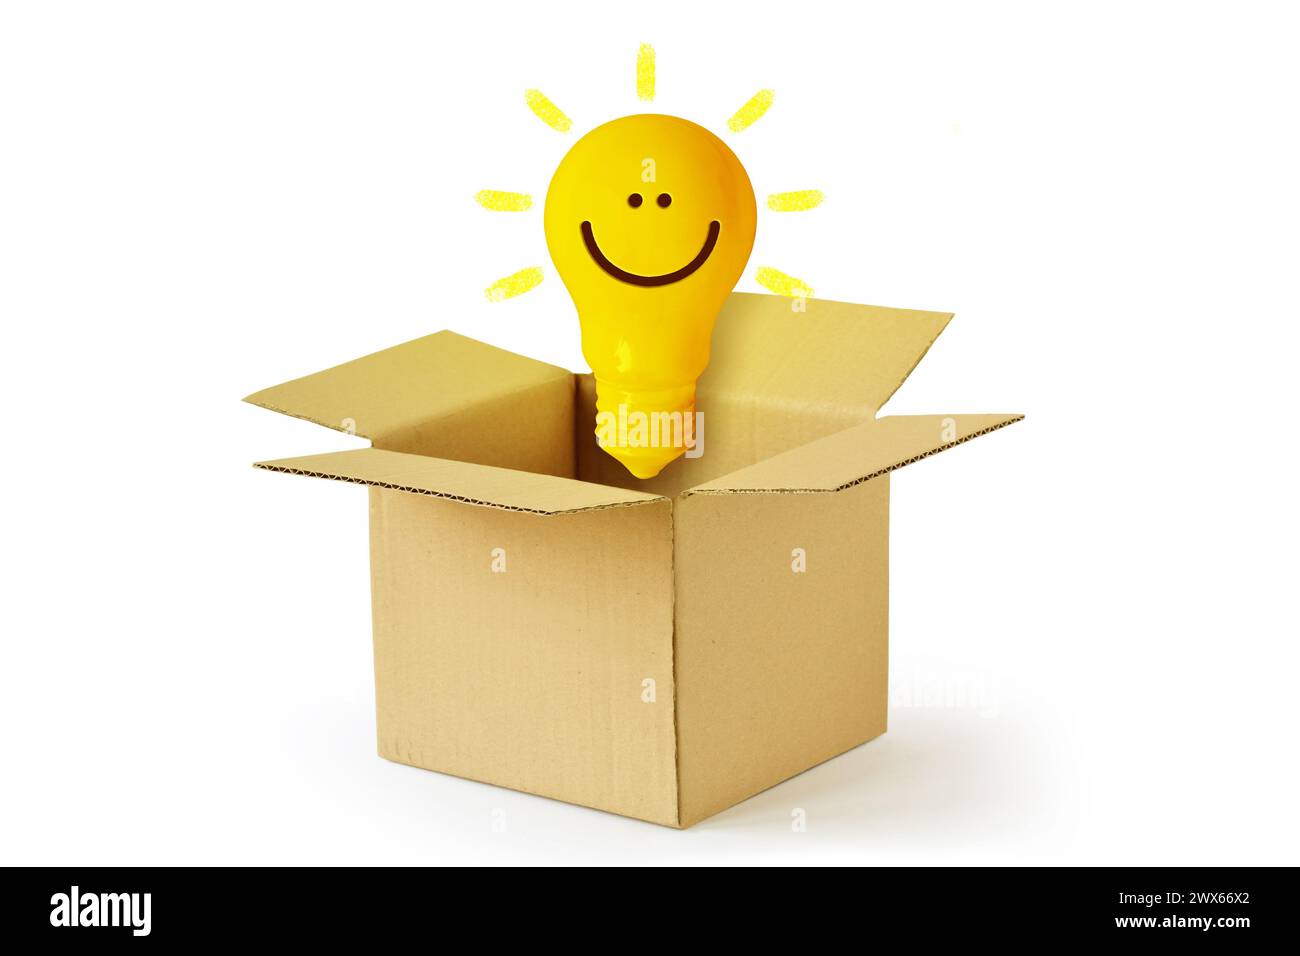 Gelbe Glühlampe mit Lächeln im Karton - Konzept der Ideen und Kreativität Stockfoto